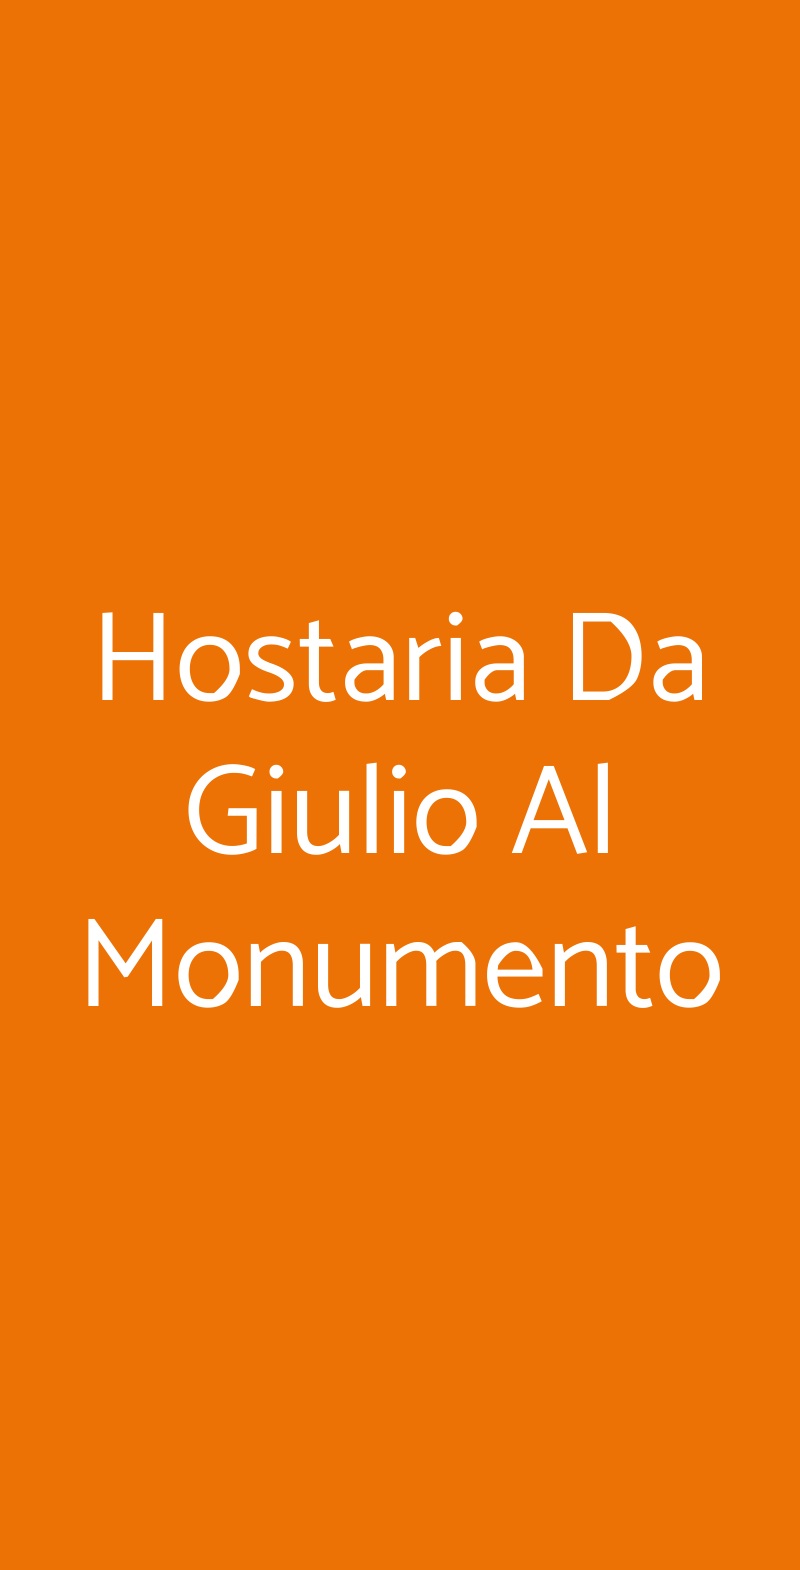 Hostaria Da Giulio Al Monumento Roma menù 1 pagina